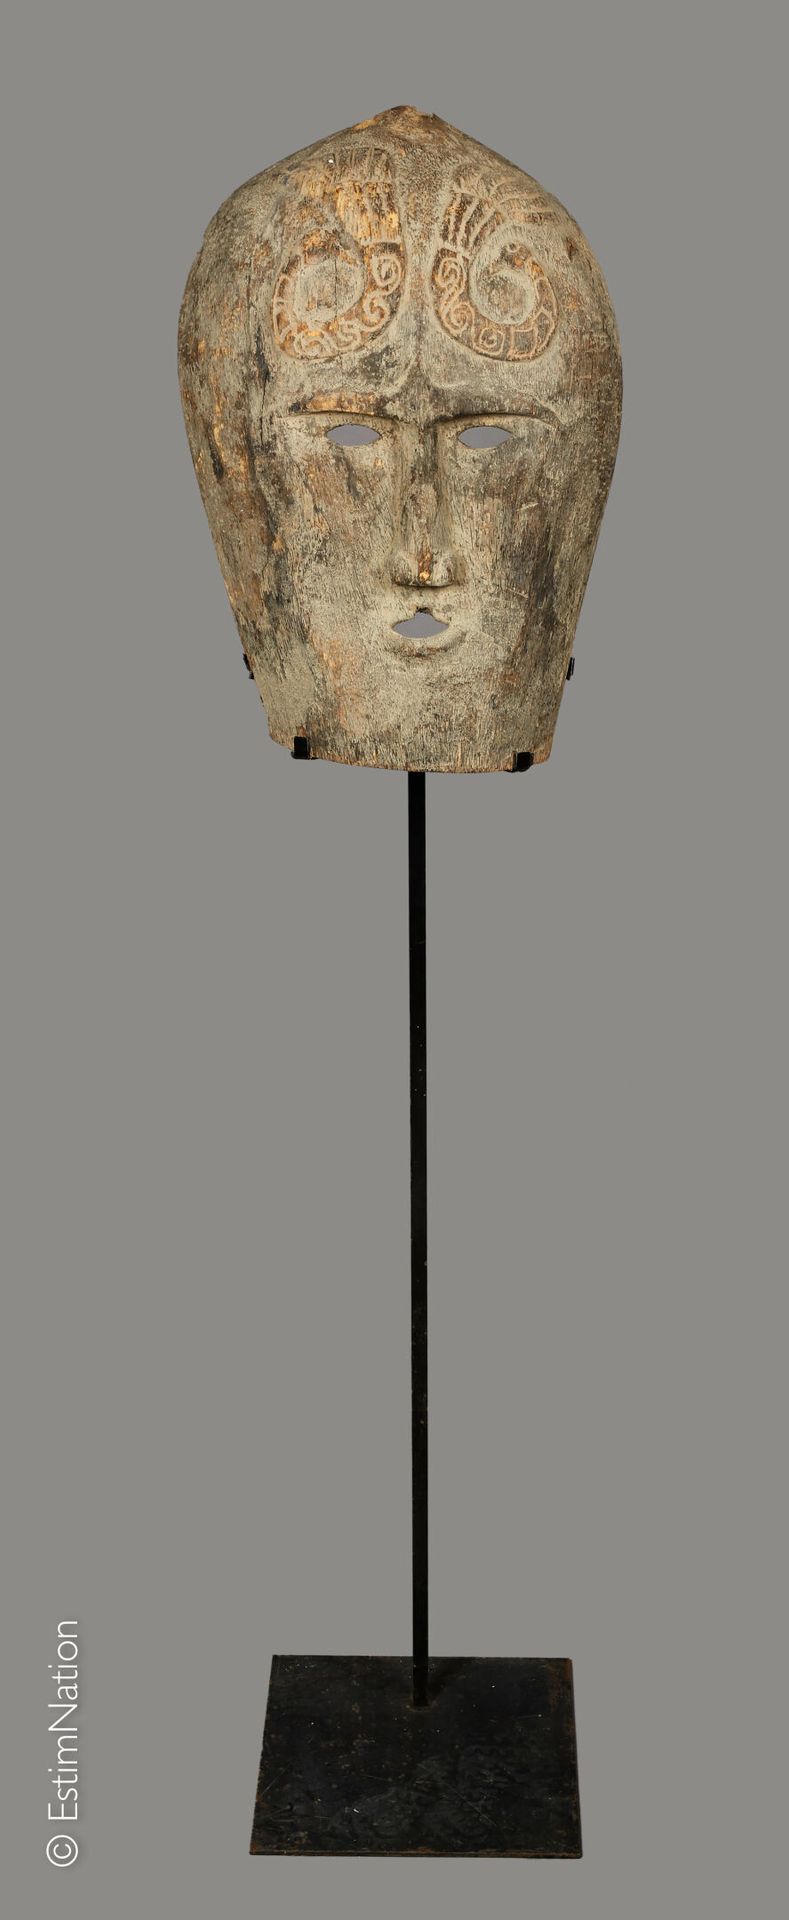 TIMOR TIMOR



Maschera antropomorfa in legno intagliato con decorazione incisa &hellip;